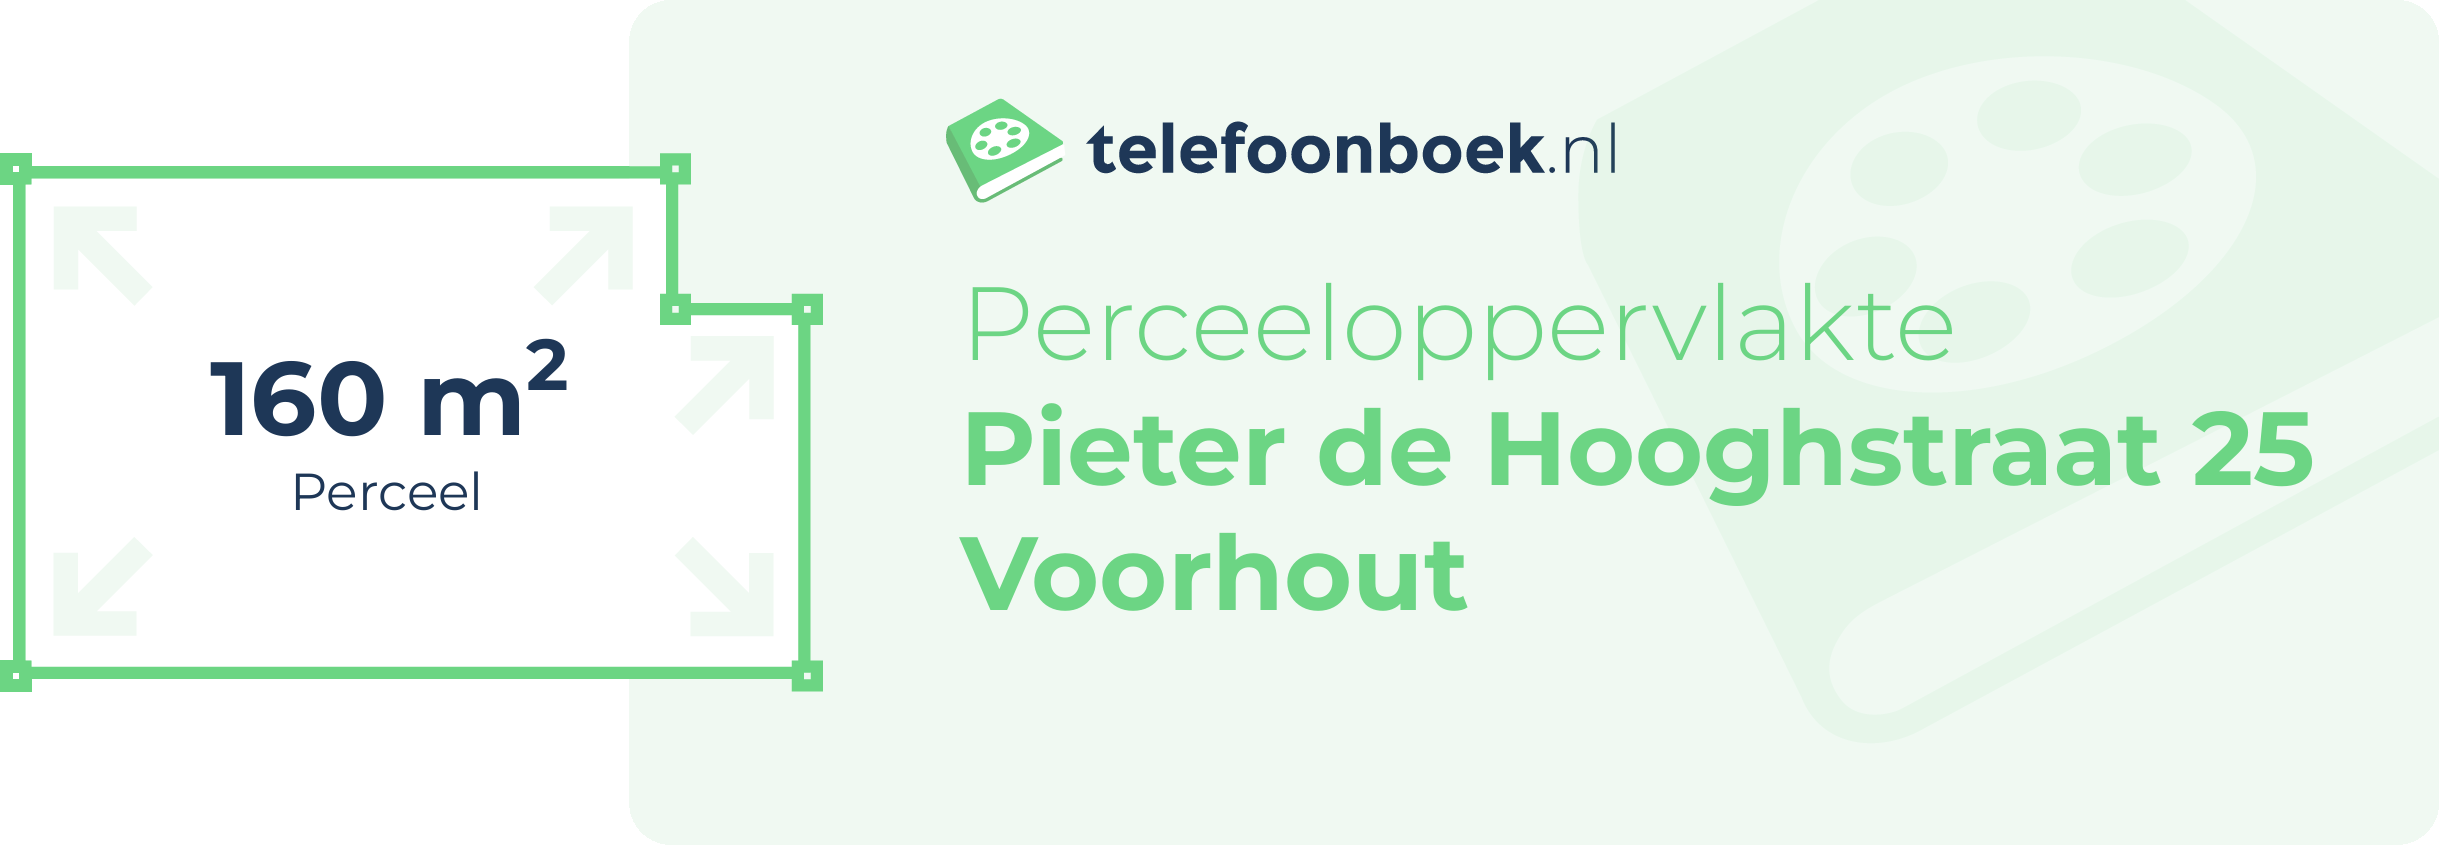 Perceeloppervlakte Pieter De Hooghstraat 25 Voorhout